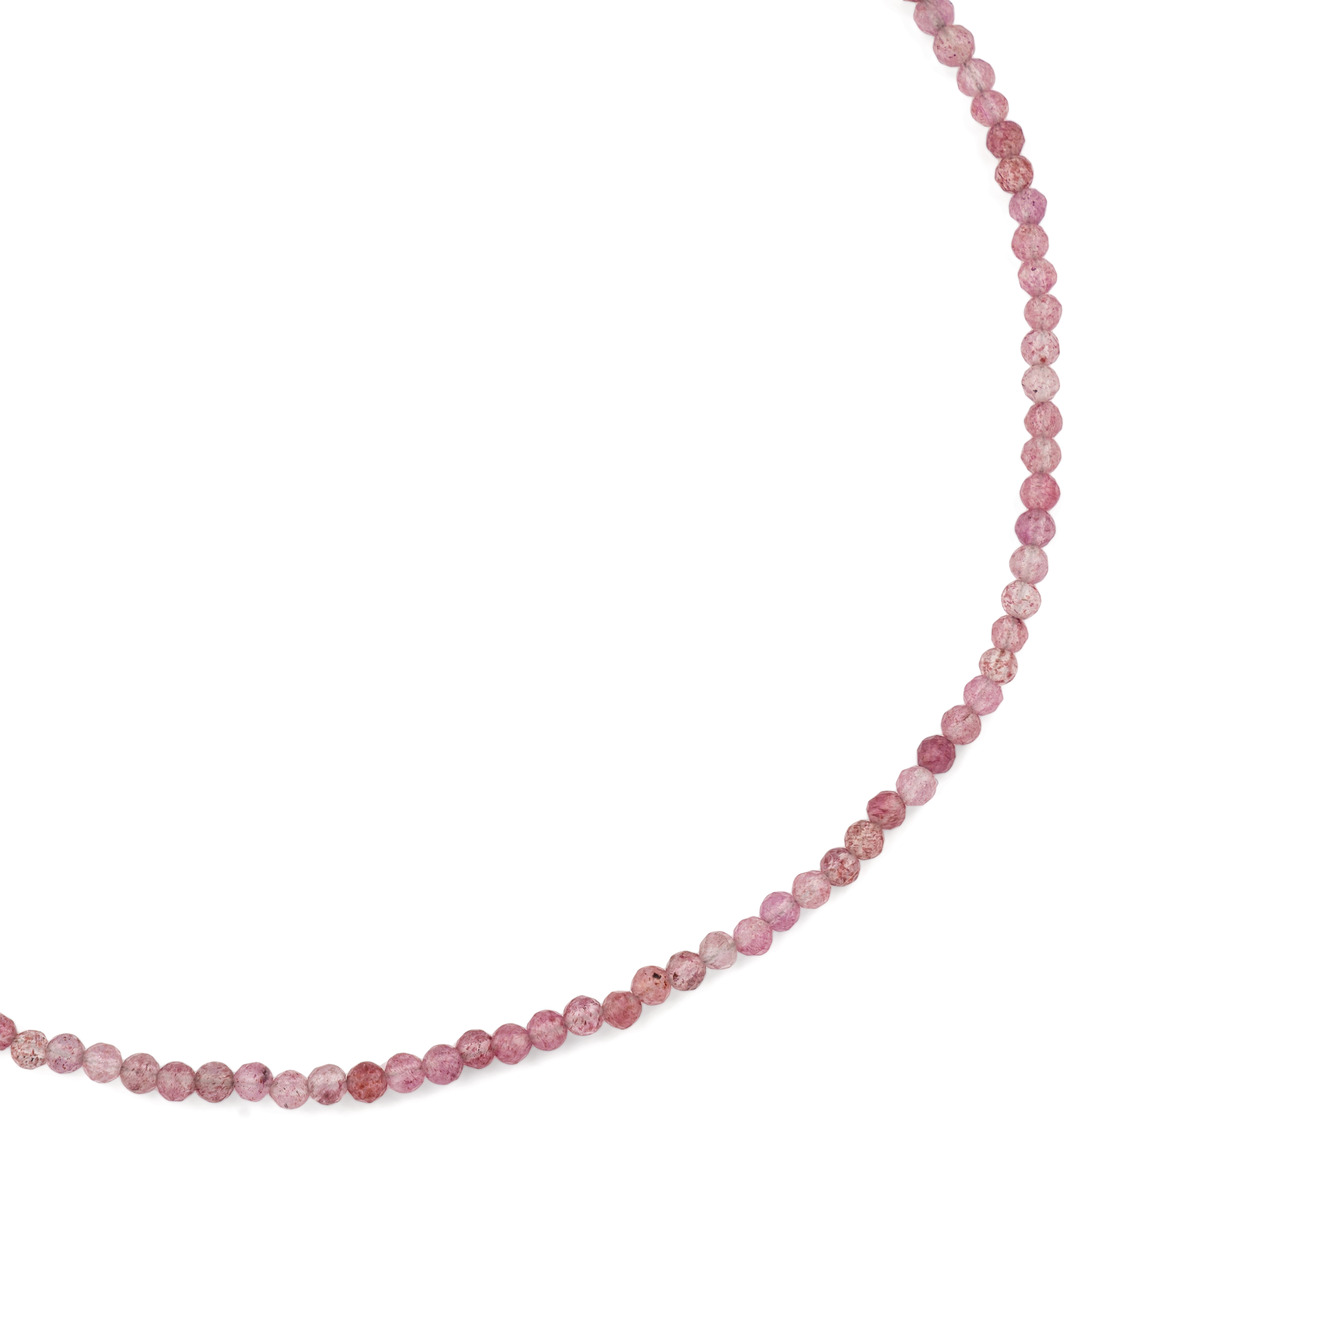 wisteria gems чокер из пресованных натуральных камней розового цвета Wisteria Gems Чокер из розового кварца